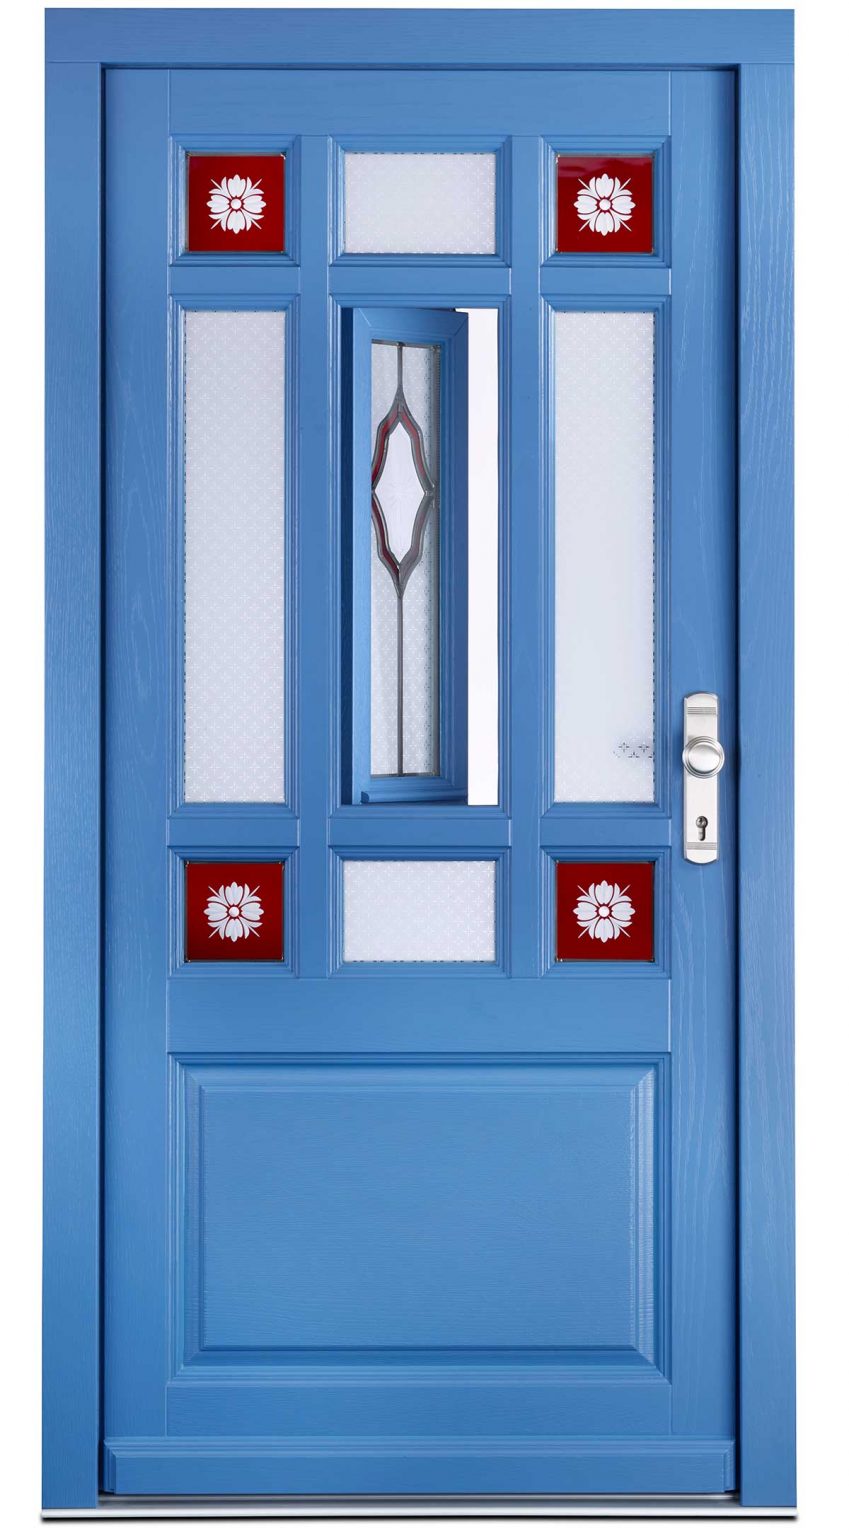 Haustür aus Holz blau LANDHAUSTÜR mit neun Glasfeldern, vier Friesenecken, farbliche Gestaltung nach Kundenwunsch. Klönflügel mit Bleiverglasung und einer Kassette im unteren Bereich.